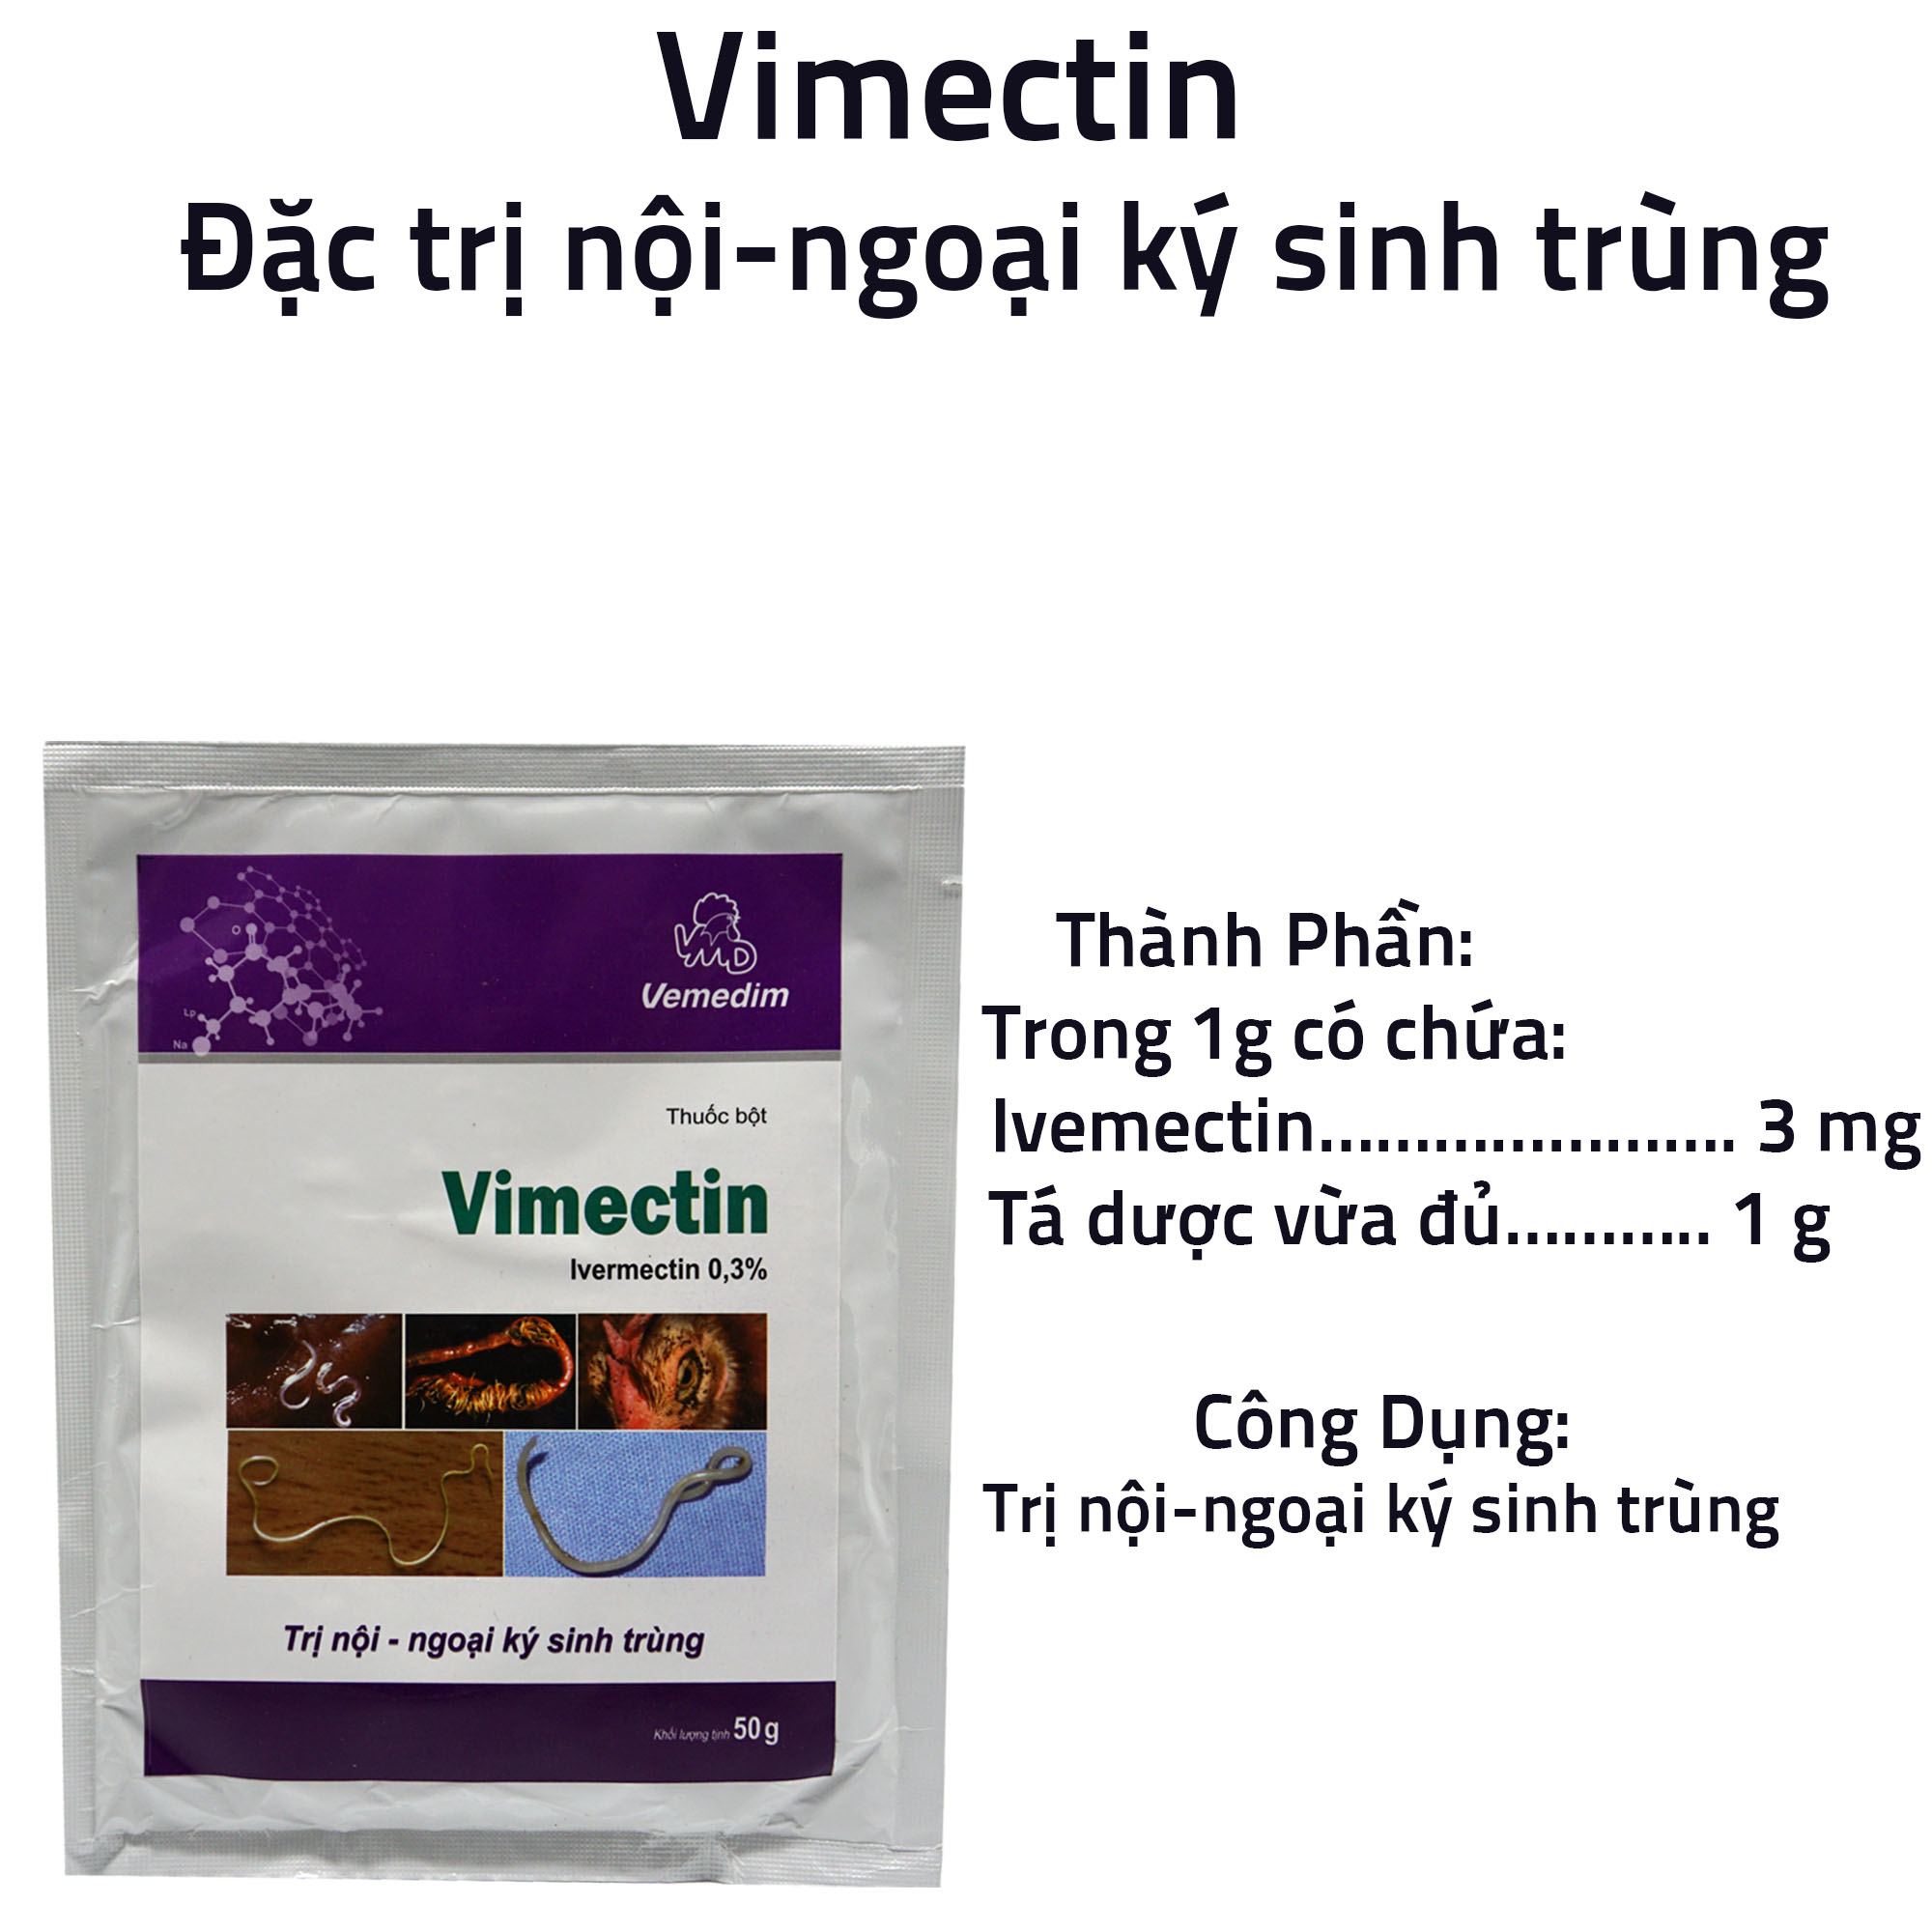 [THÚ Y] 1 gói Vimectin dùng cho nội ngoại ký sinh trùng trên trâu bò lợn gà